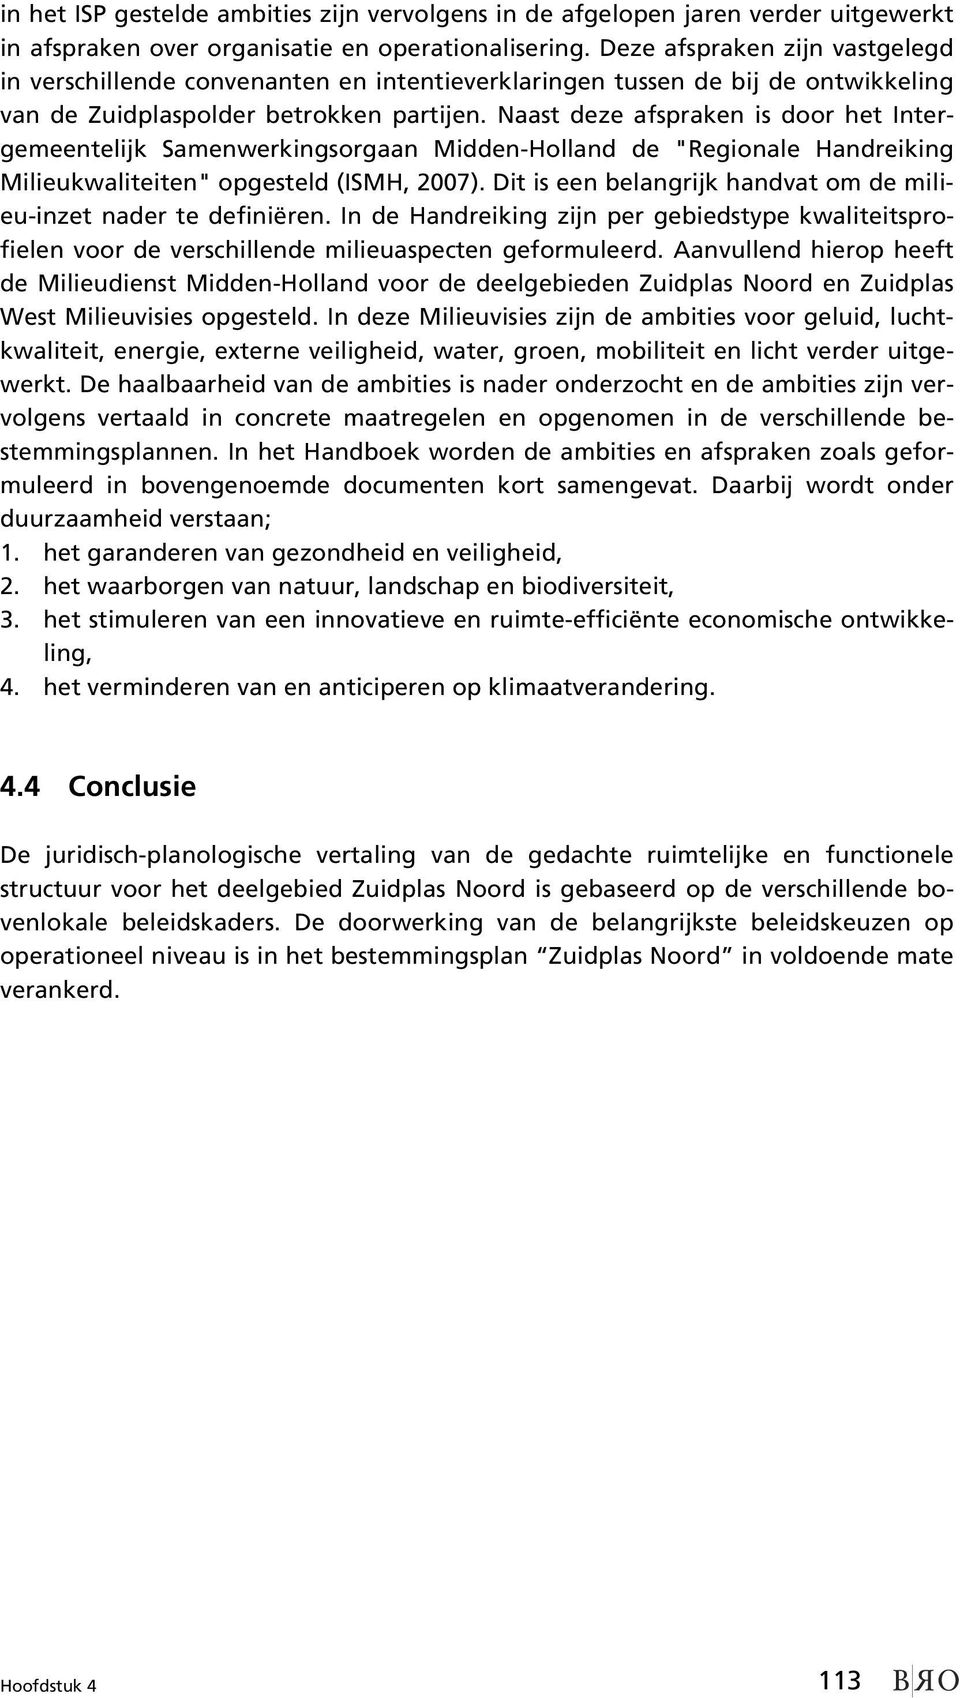 Naast deze afspraken is door het Intergemeentelijk Samenwerkingsorgaan Midden-Holland de "Regionale Handreiking Milieukwaliteiten" opgesteld (ISMH, 2007).